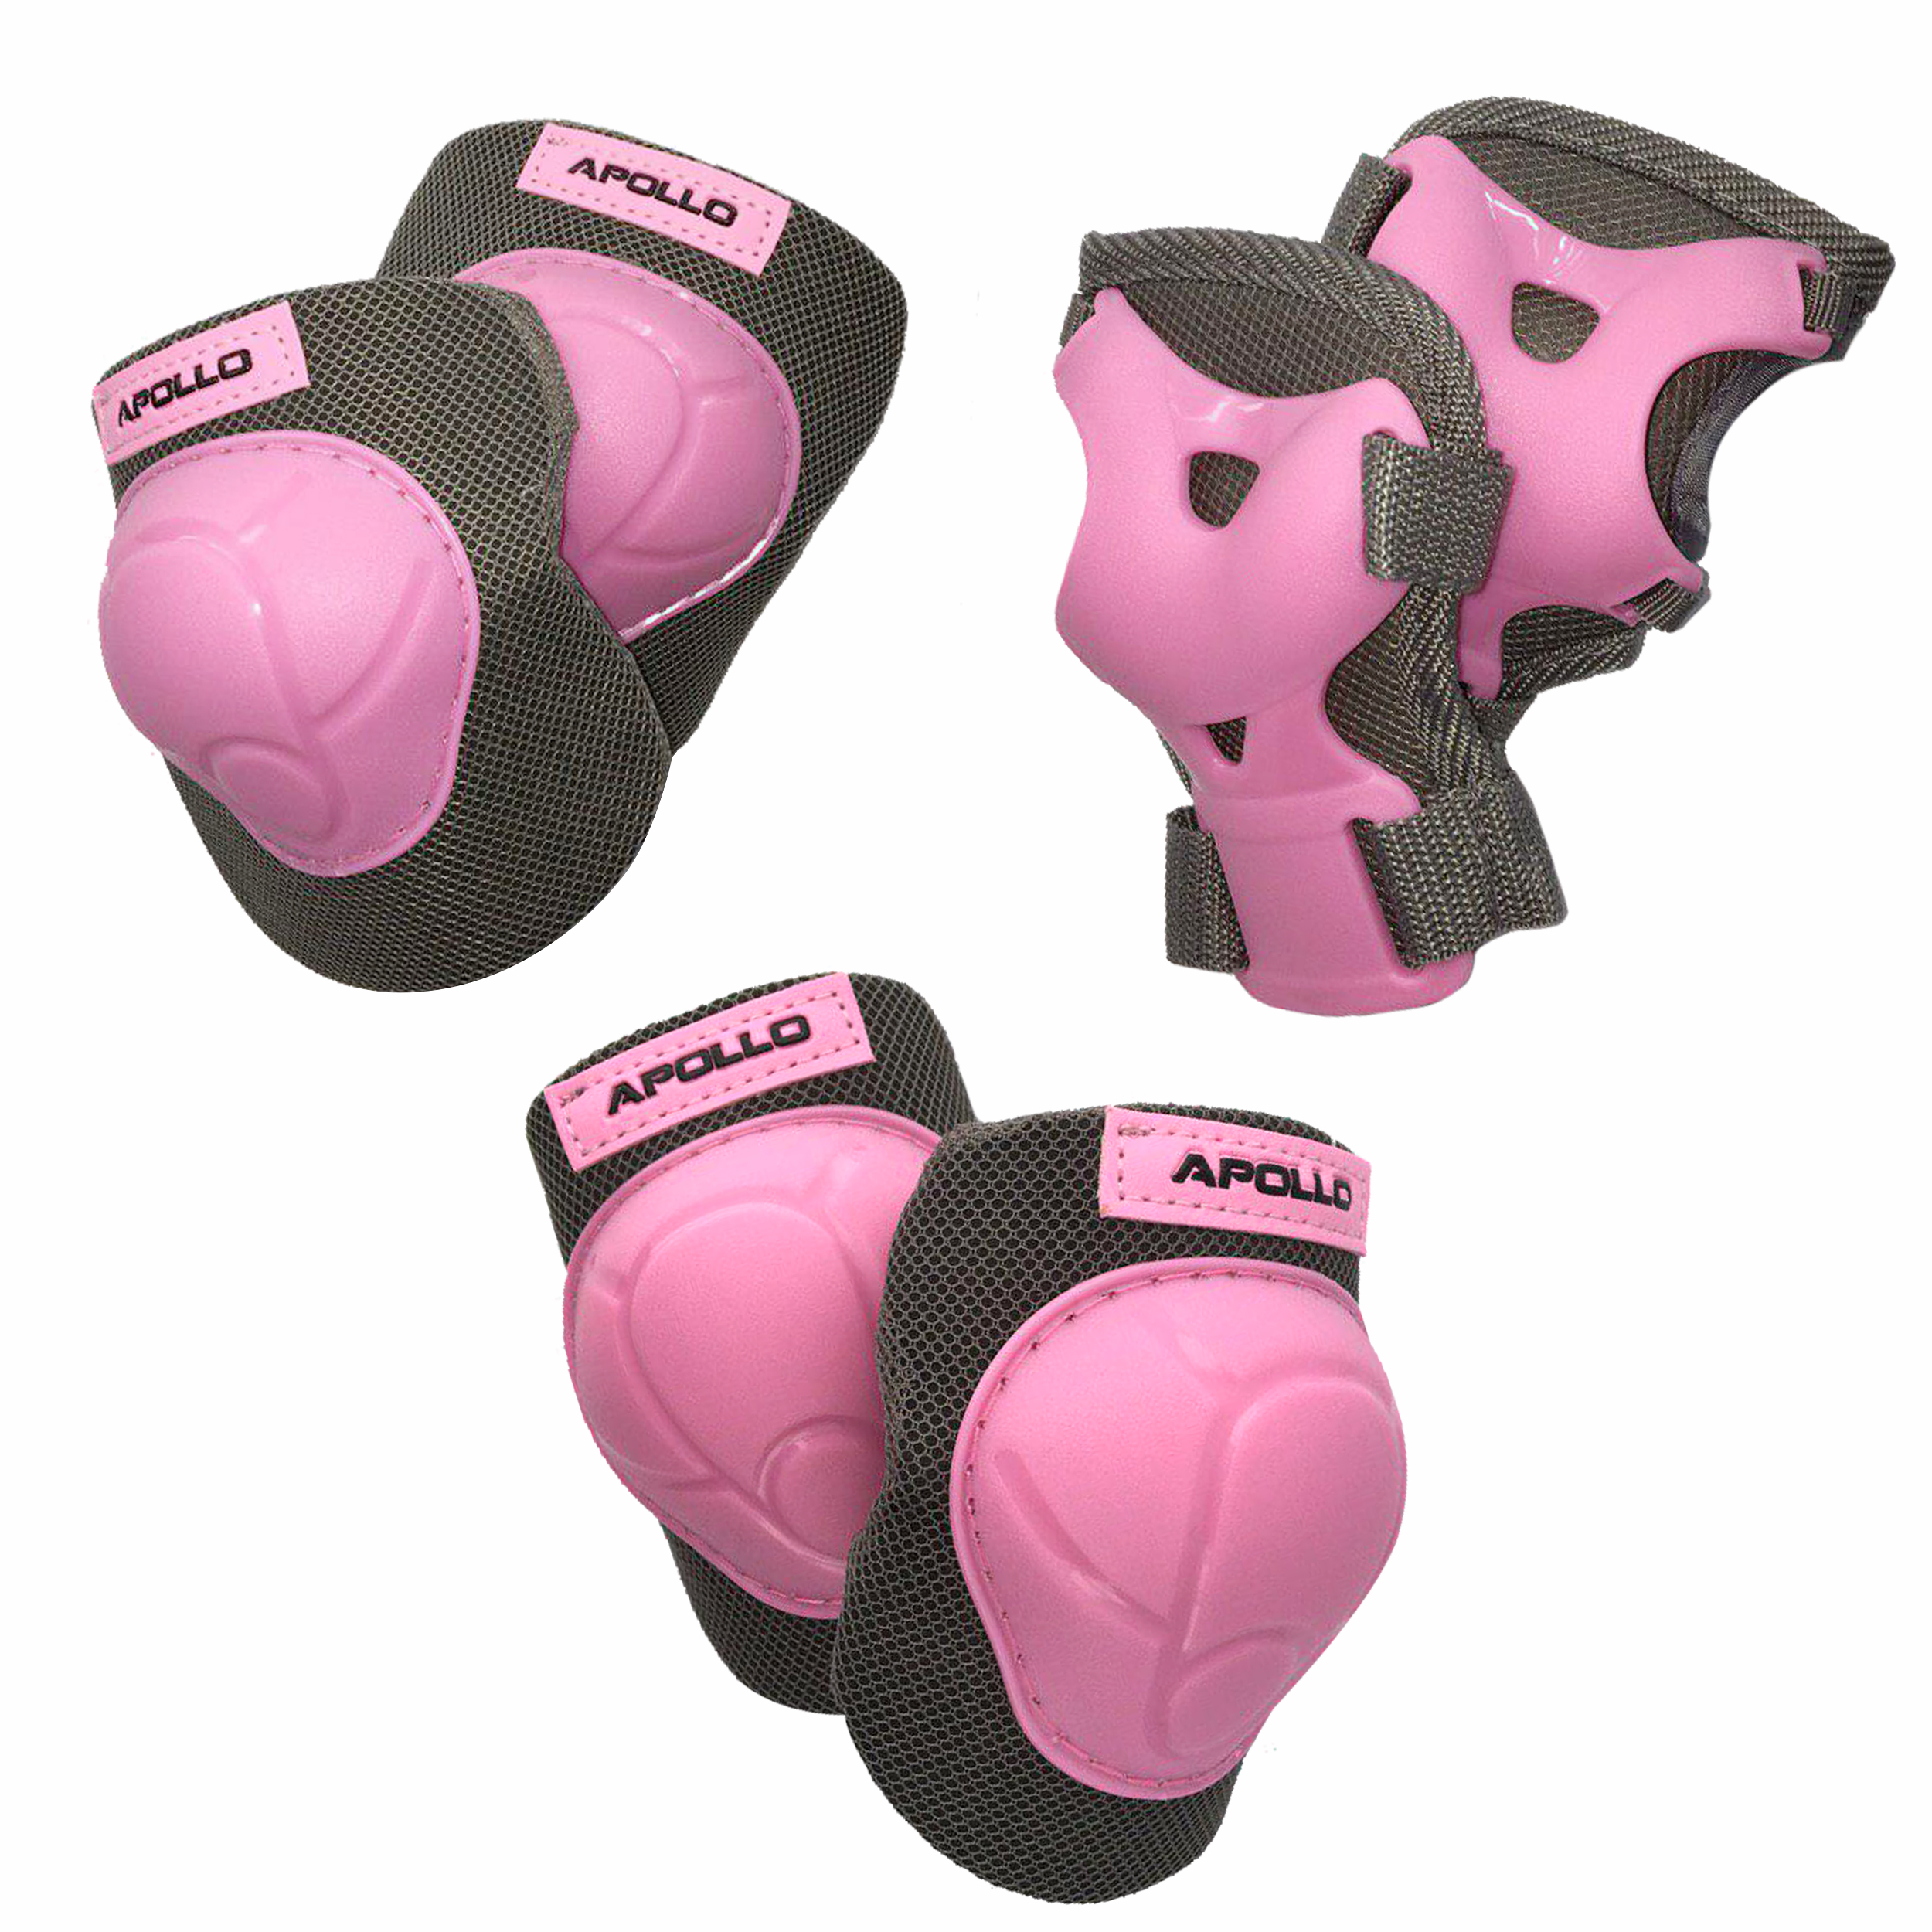 Apollo Knie- Ellenbogen und Handgelenkschoner Set Gr. L, Farbe: pink